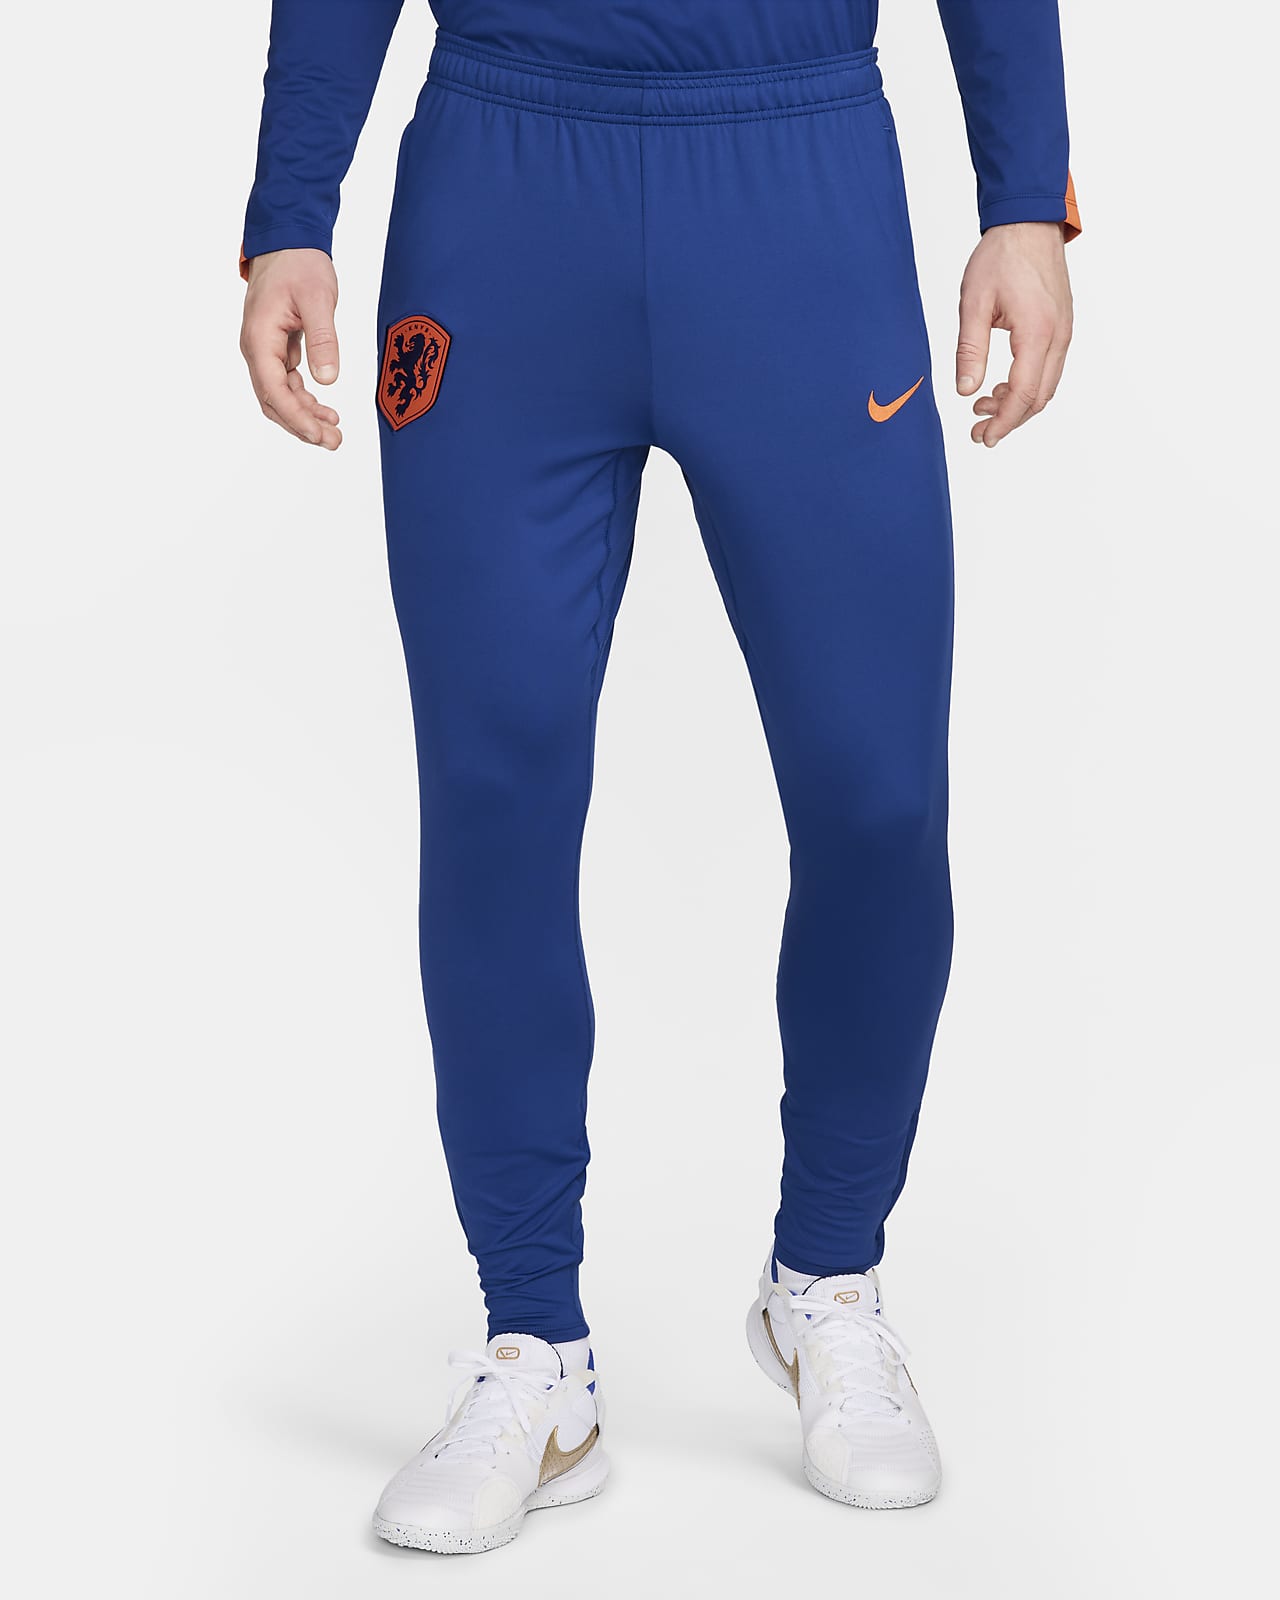 Niederlande Strike Nike Dri-FIT Strick-Fußballhose für Herren